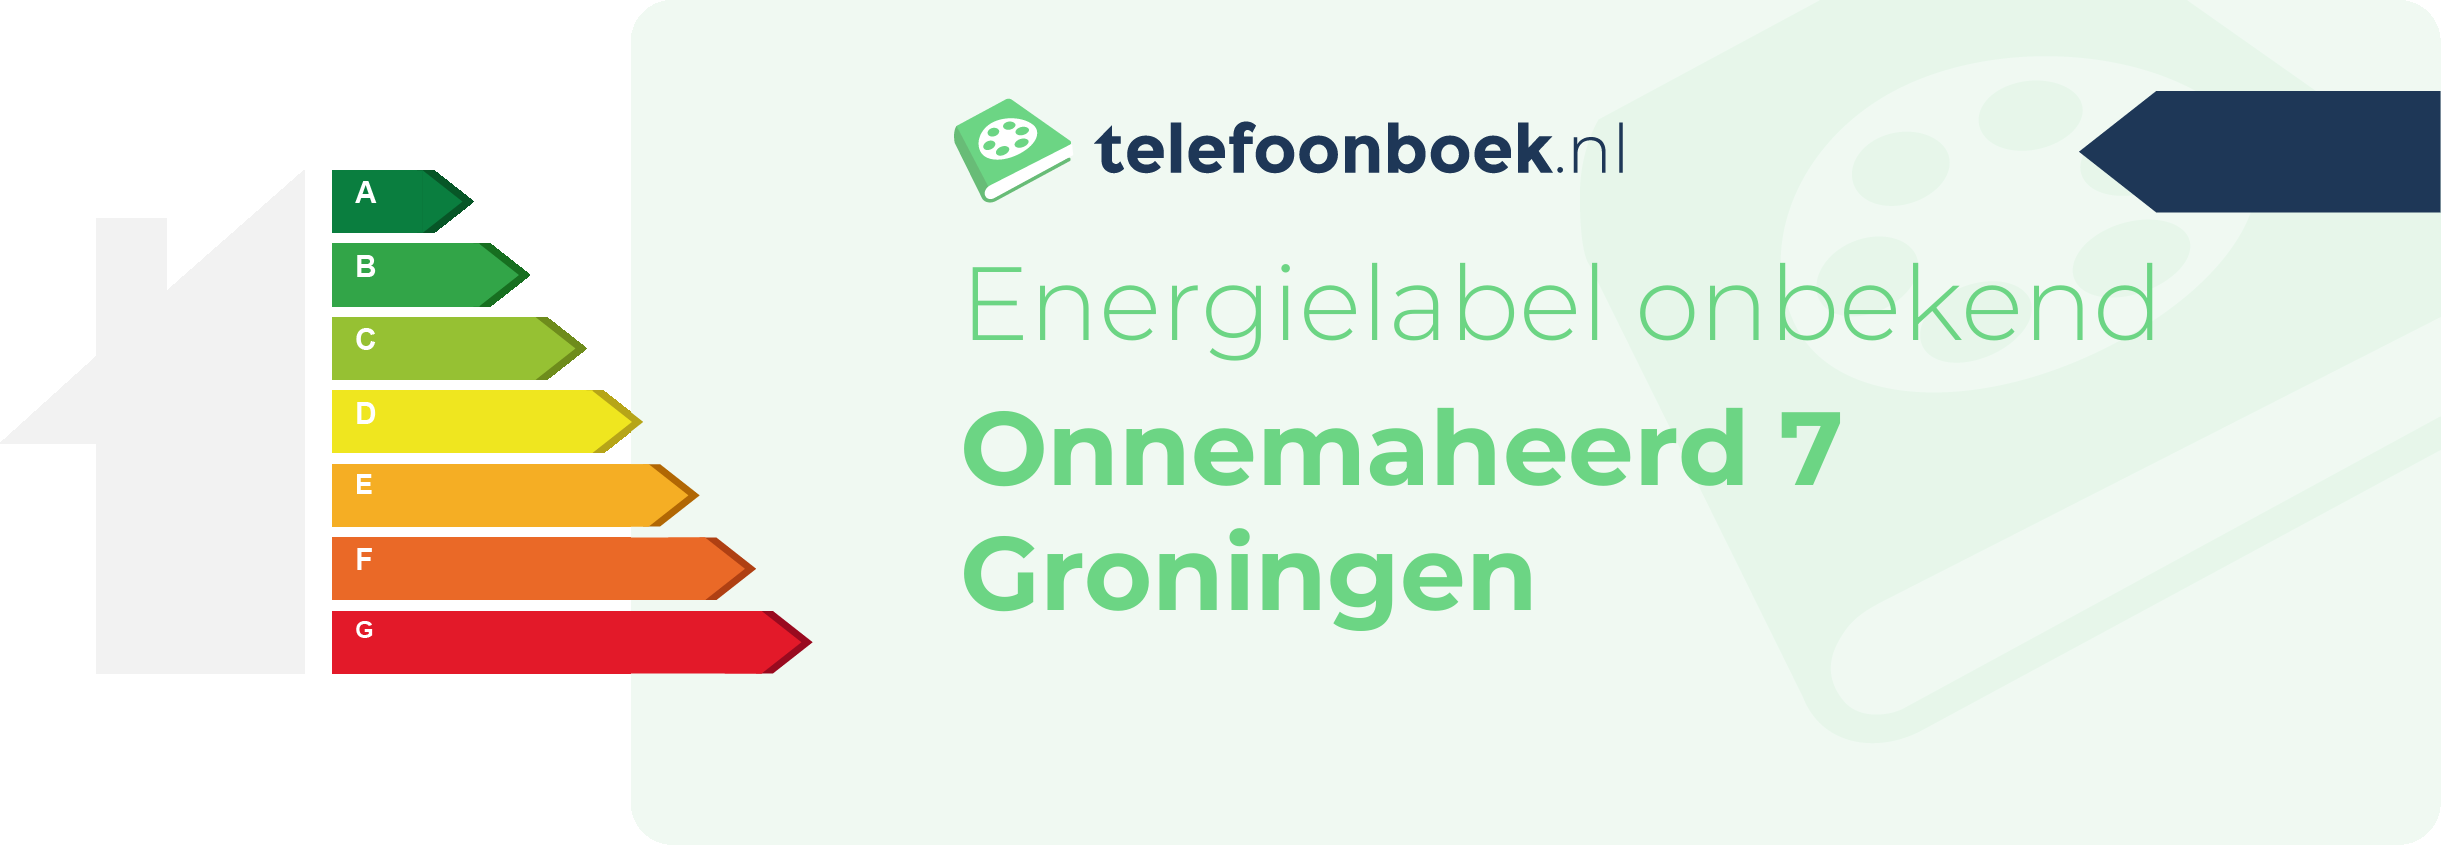 Energielabel Onnemaheerd 7 Groningen